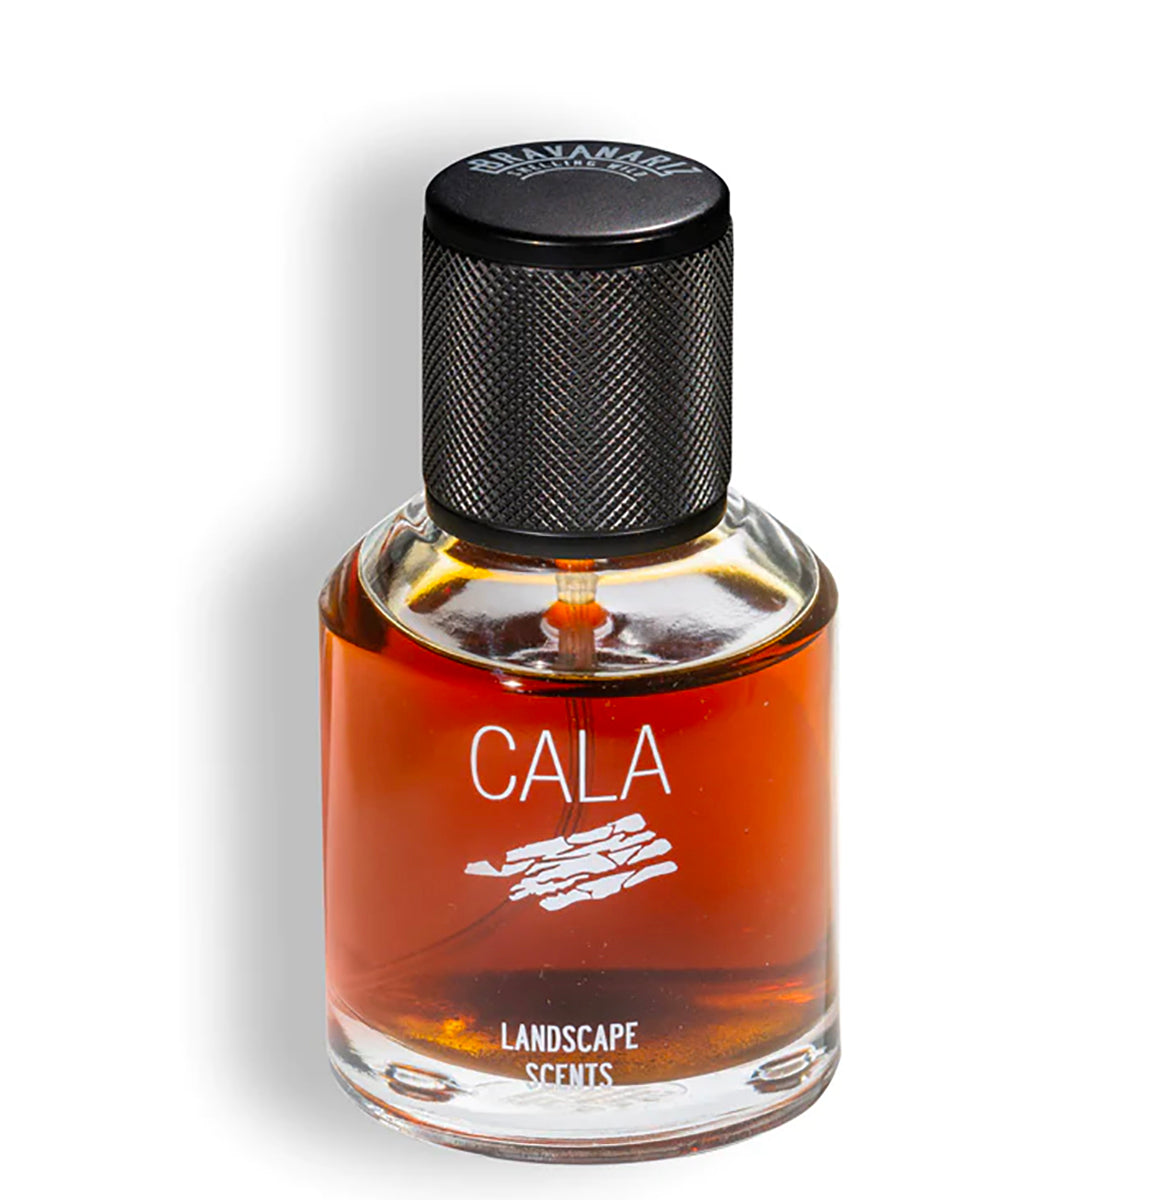 Cala by Bravaniriz at Indigo Perfumery